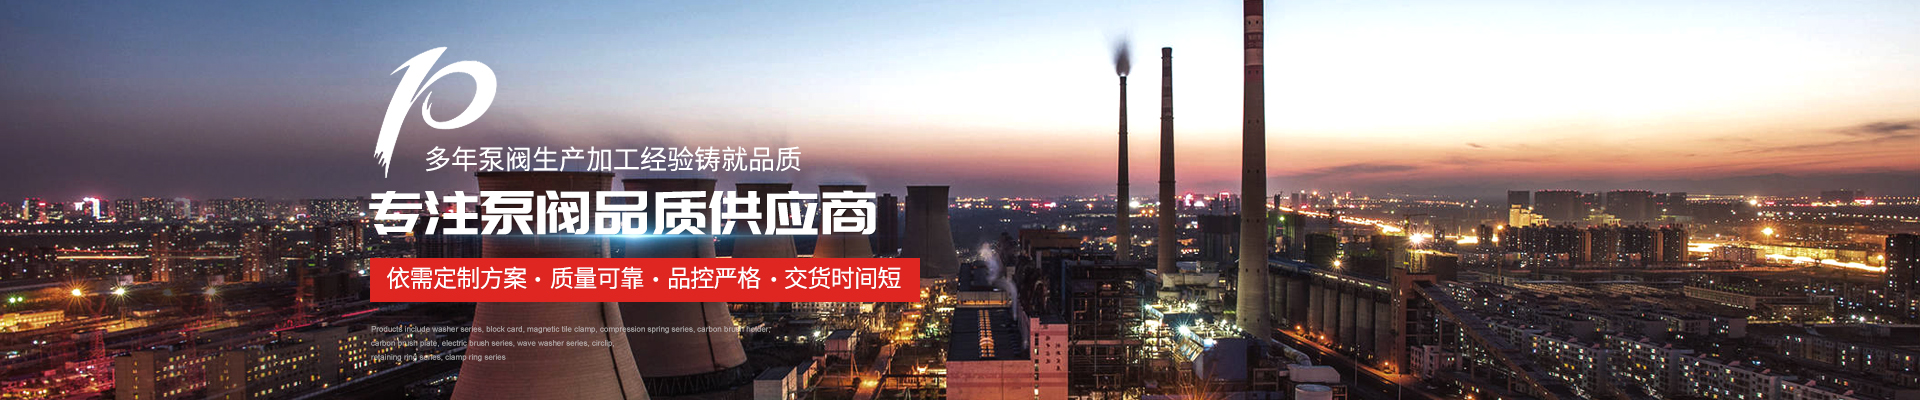 污水提升設備廠家 - 上海高適泵閥有限公司